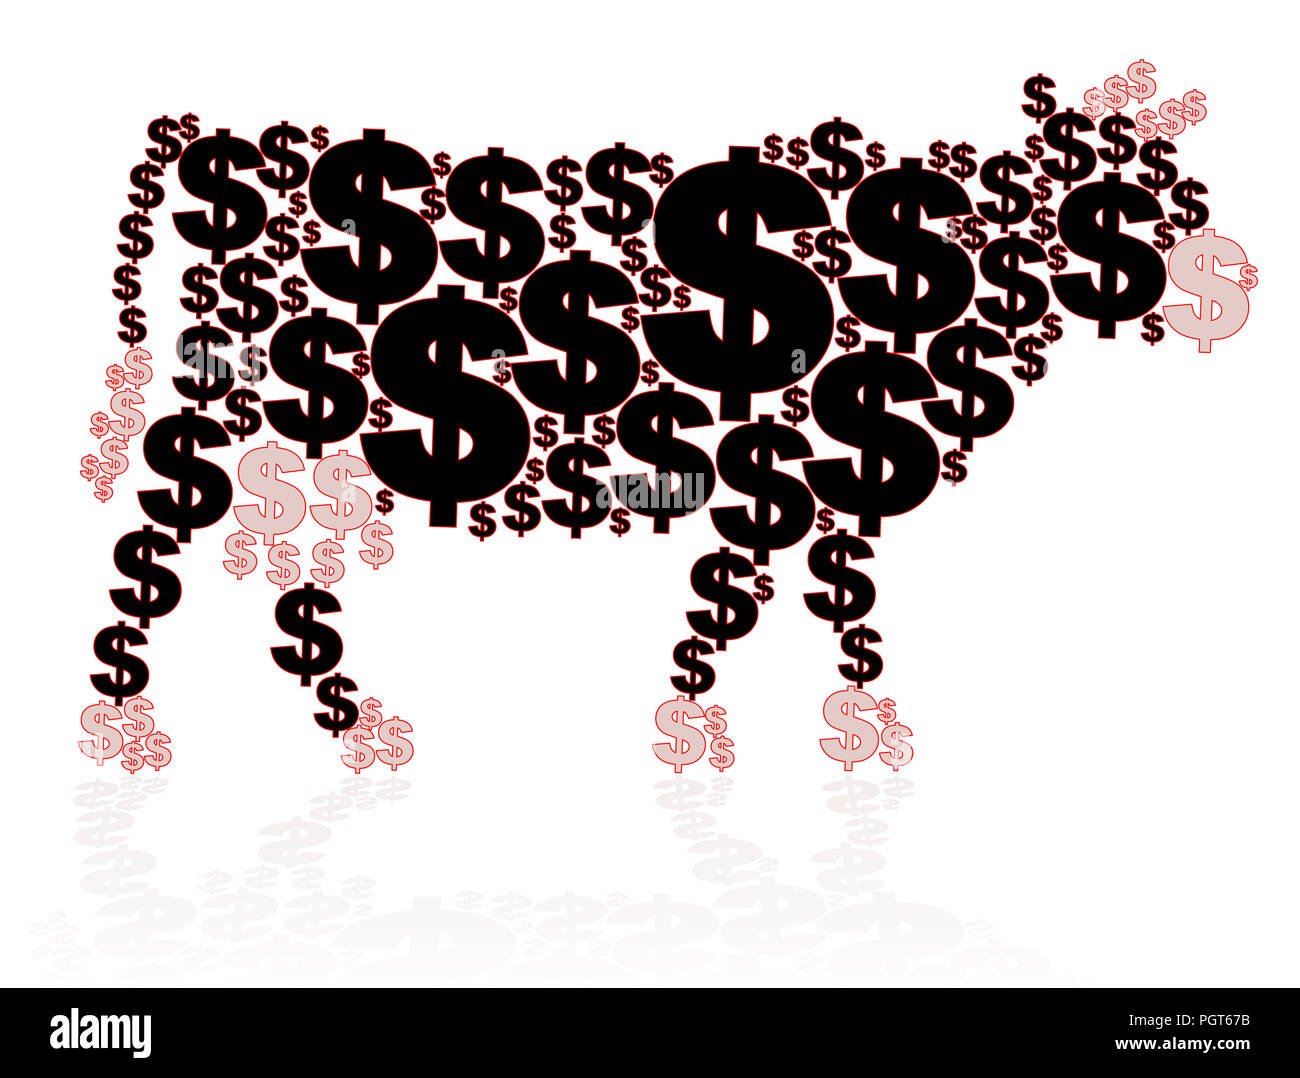 Vache, les métaphores, les dollars qui façonnent une vache - illustration sur fond blanc. Banque D'Images